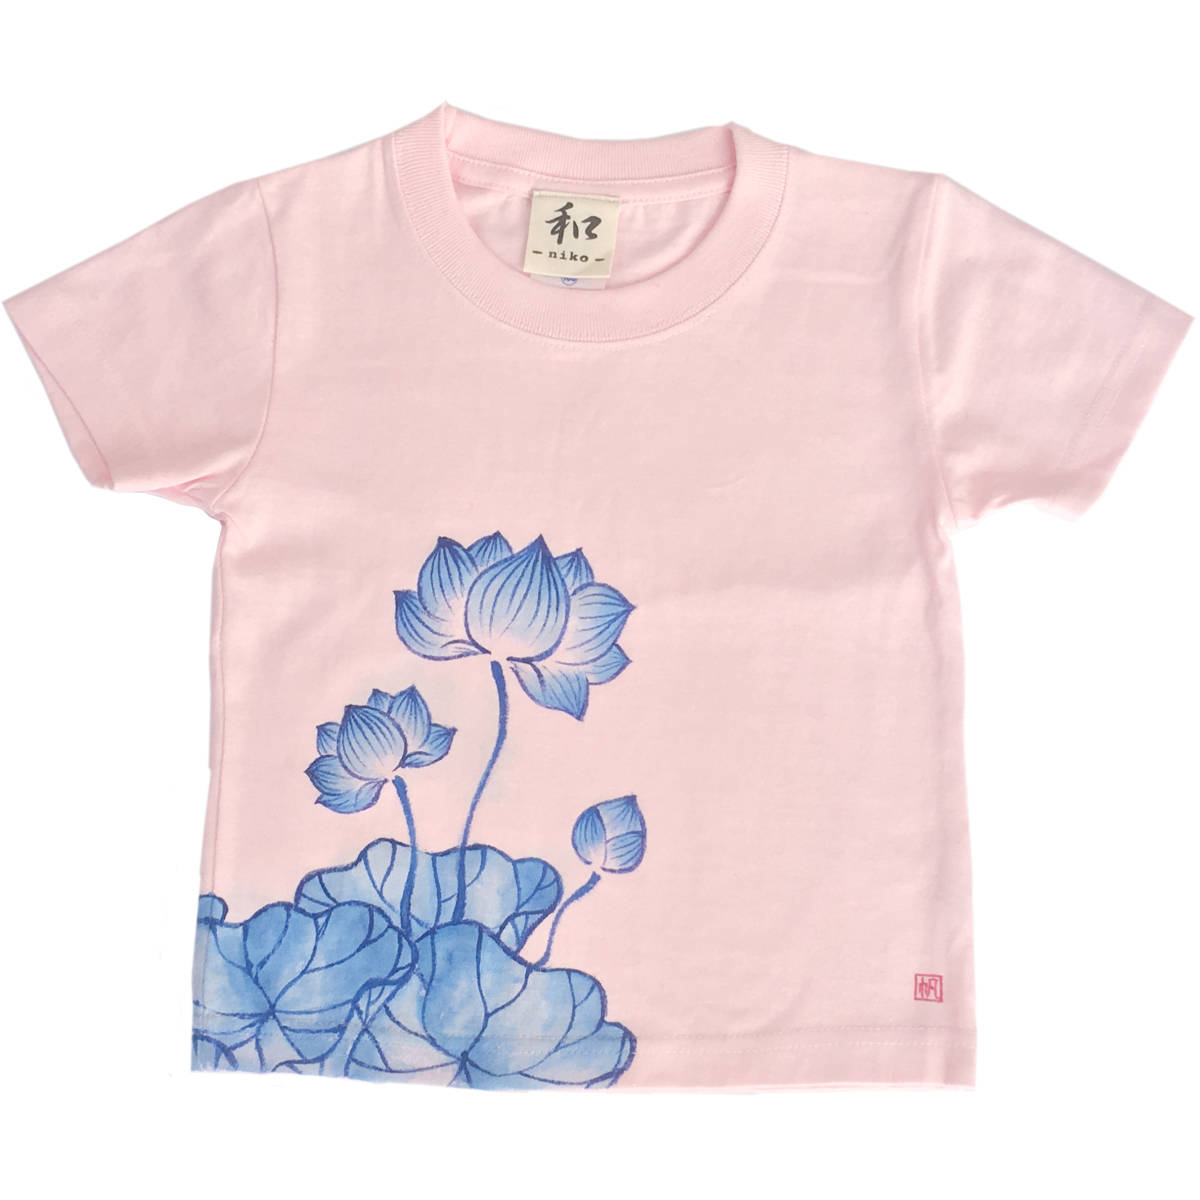 बच्चों की टी-शर्ट, आकार 130, गुलाबी कमल पैटर्न टी-शर्ट, हाथ से चित्रित कमल के फूल पैटर्न वाली टी-शर्ट, आधी बाजू, जापानी पैटर्न, जापानी शैली में, रेट्रो, हस्तनिर्मित, सबसे ऊपर, छोटी बाजू की टी-शर्ट, 130(125~134 सेमी)